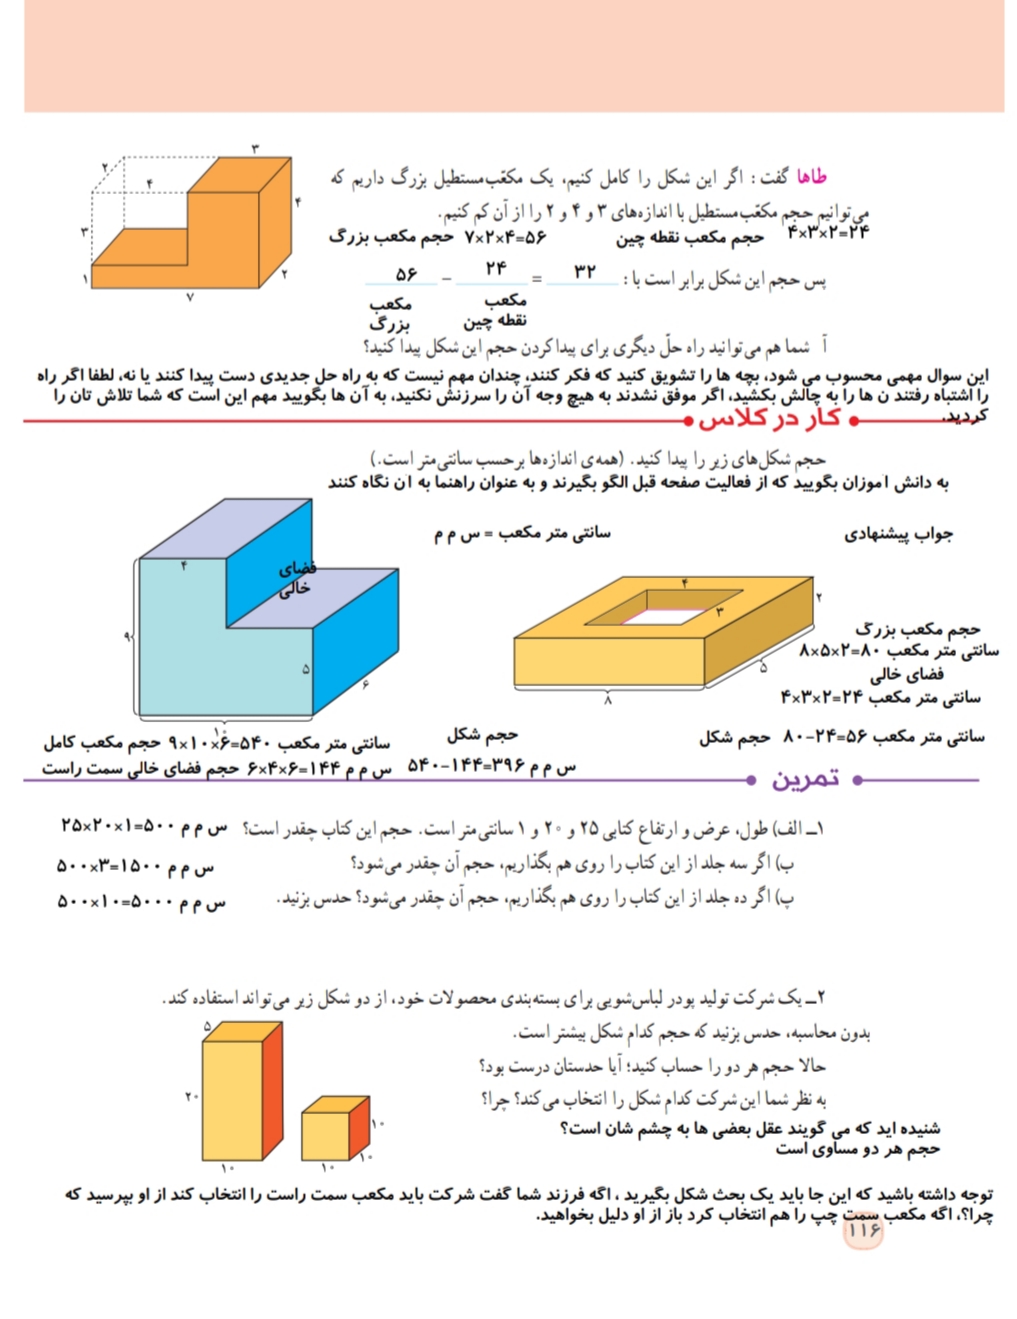 آموزش تدریس حجم ریاضی پنجم+ حل تمام تمرین ها + توضیح و تصویر